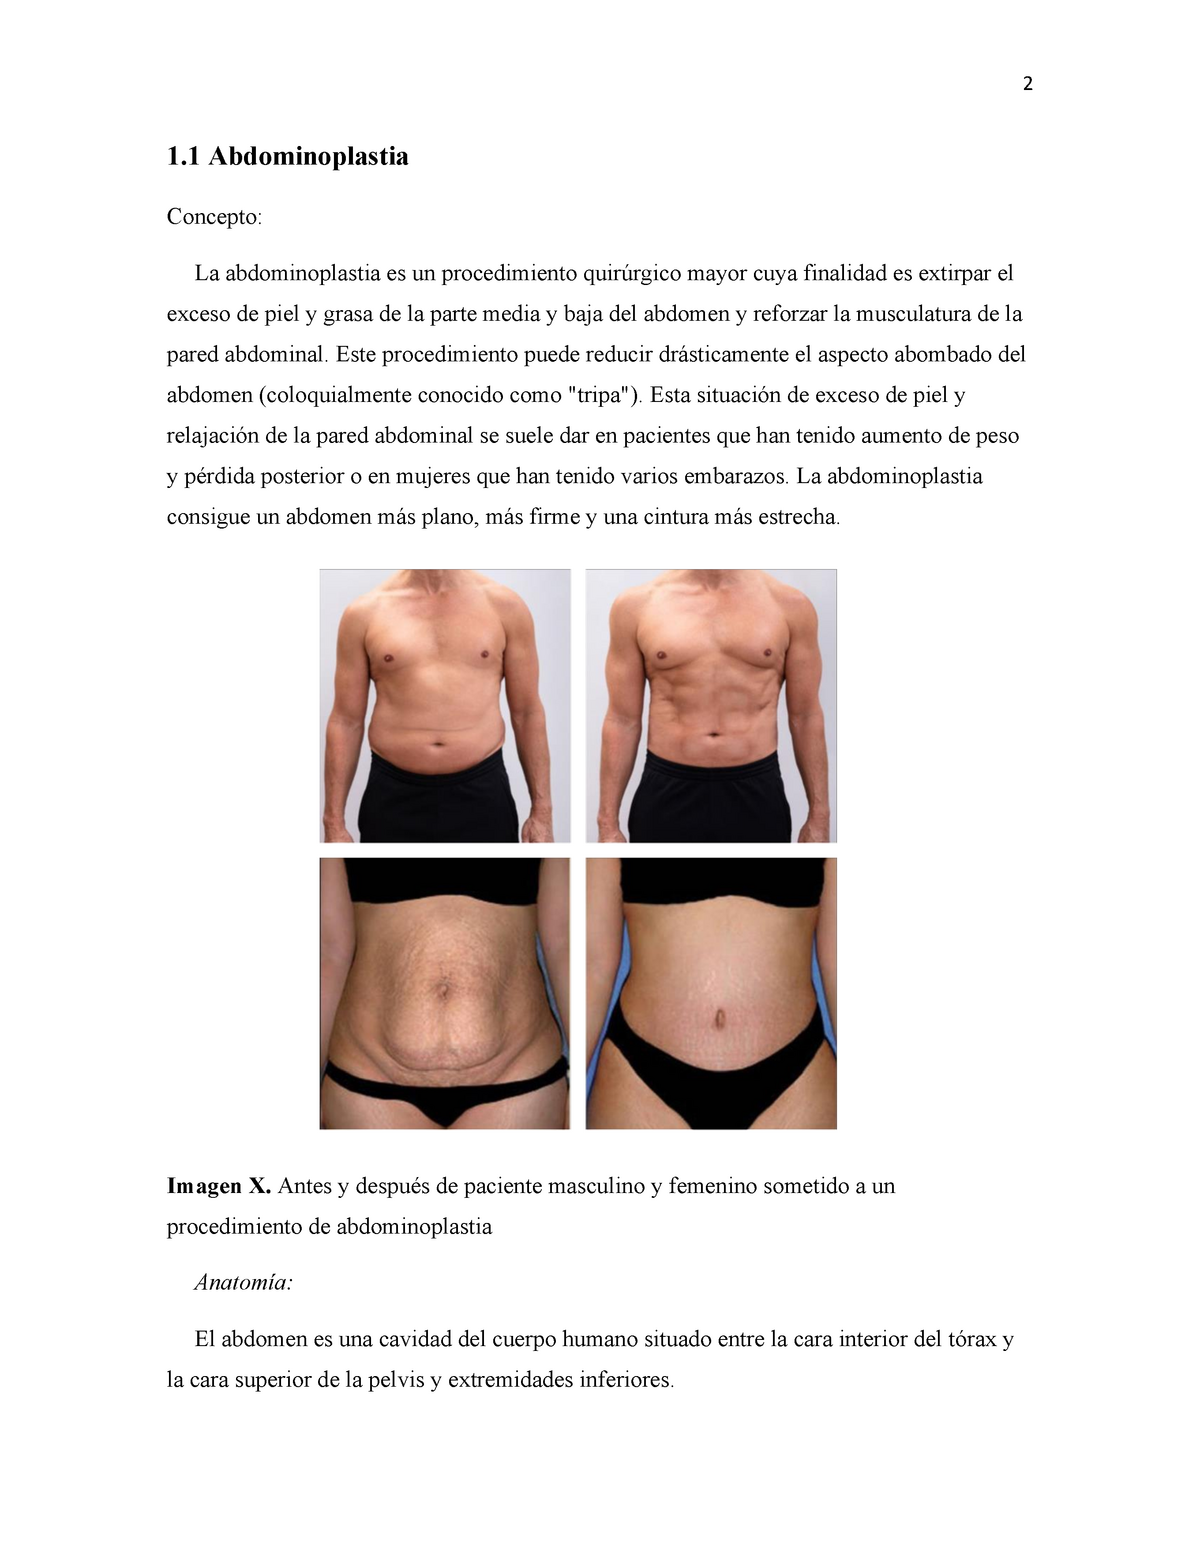 Manual de Cirugía plástica detallada - 1 Abdominoplastia Concepto: La  abdominoplastia es un - Studocu